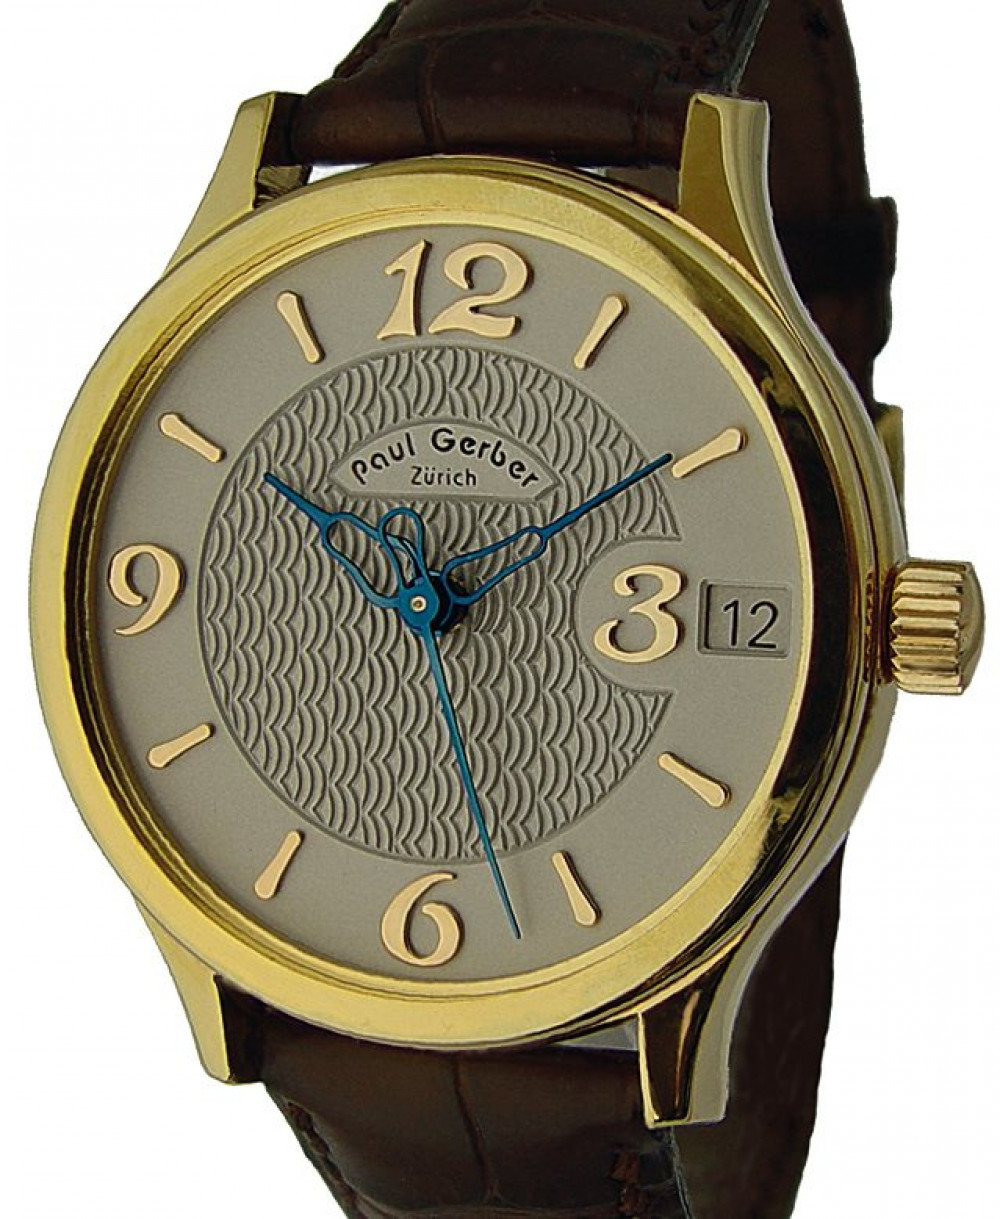 Zegarek firmy Paul Gerber, model 41